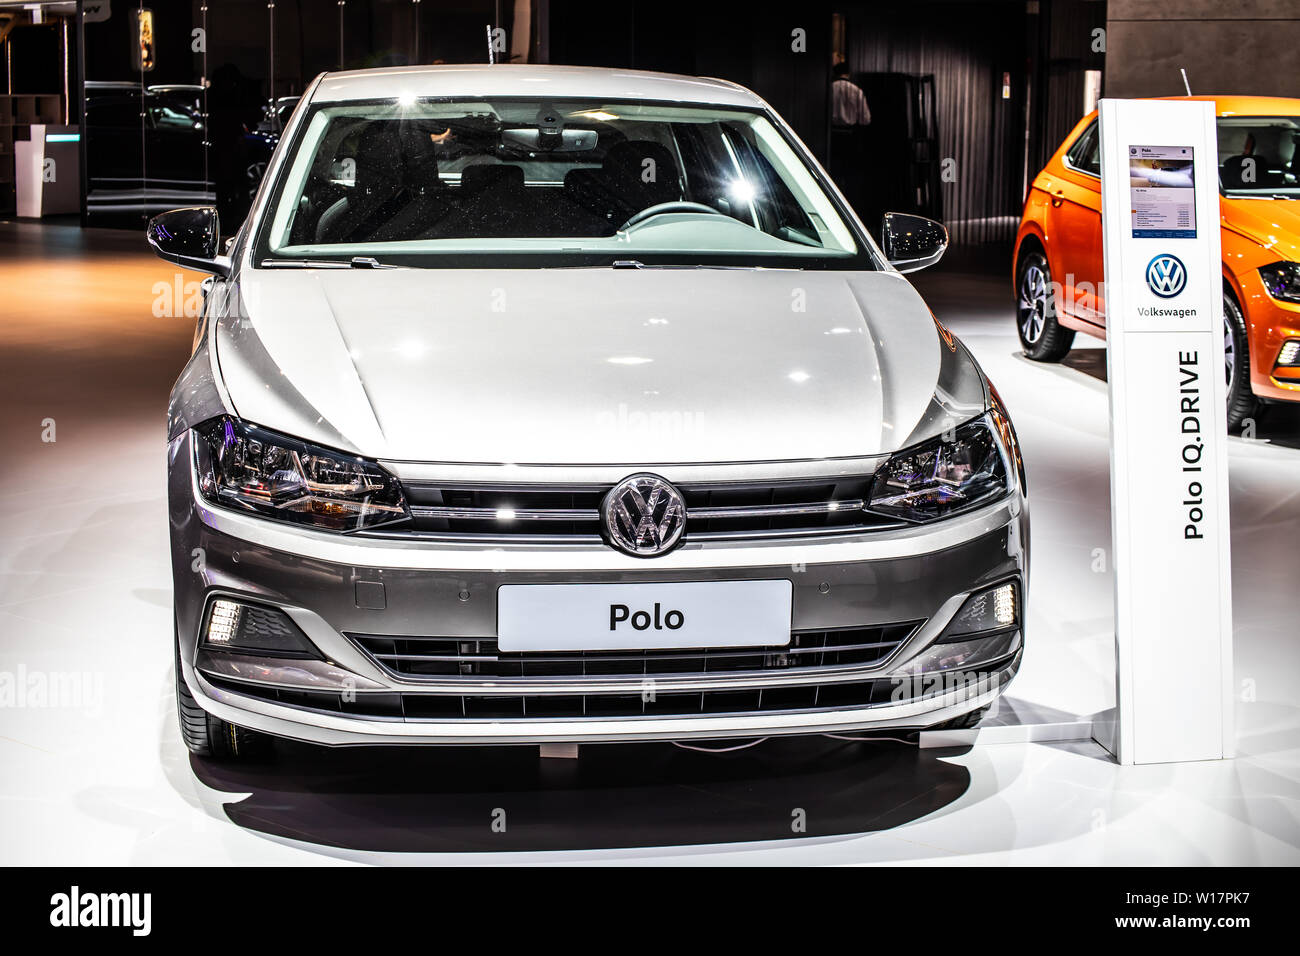 VW Polo 1.6 TDI - Auto des Jahres im Test